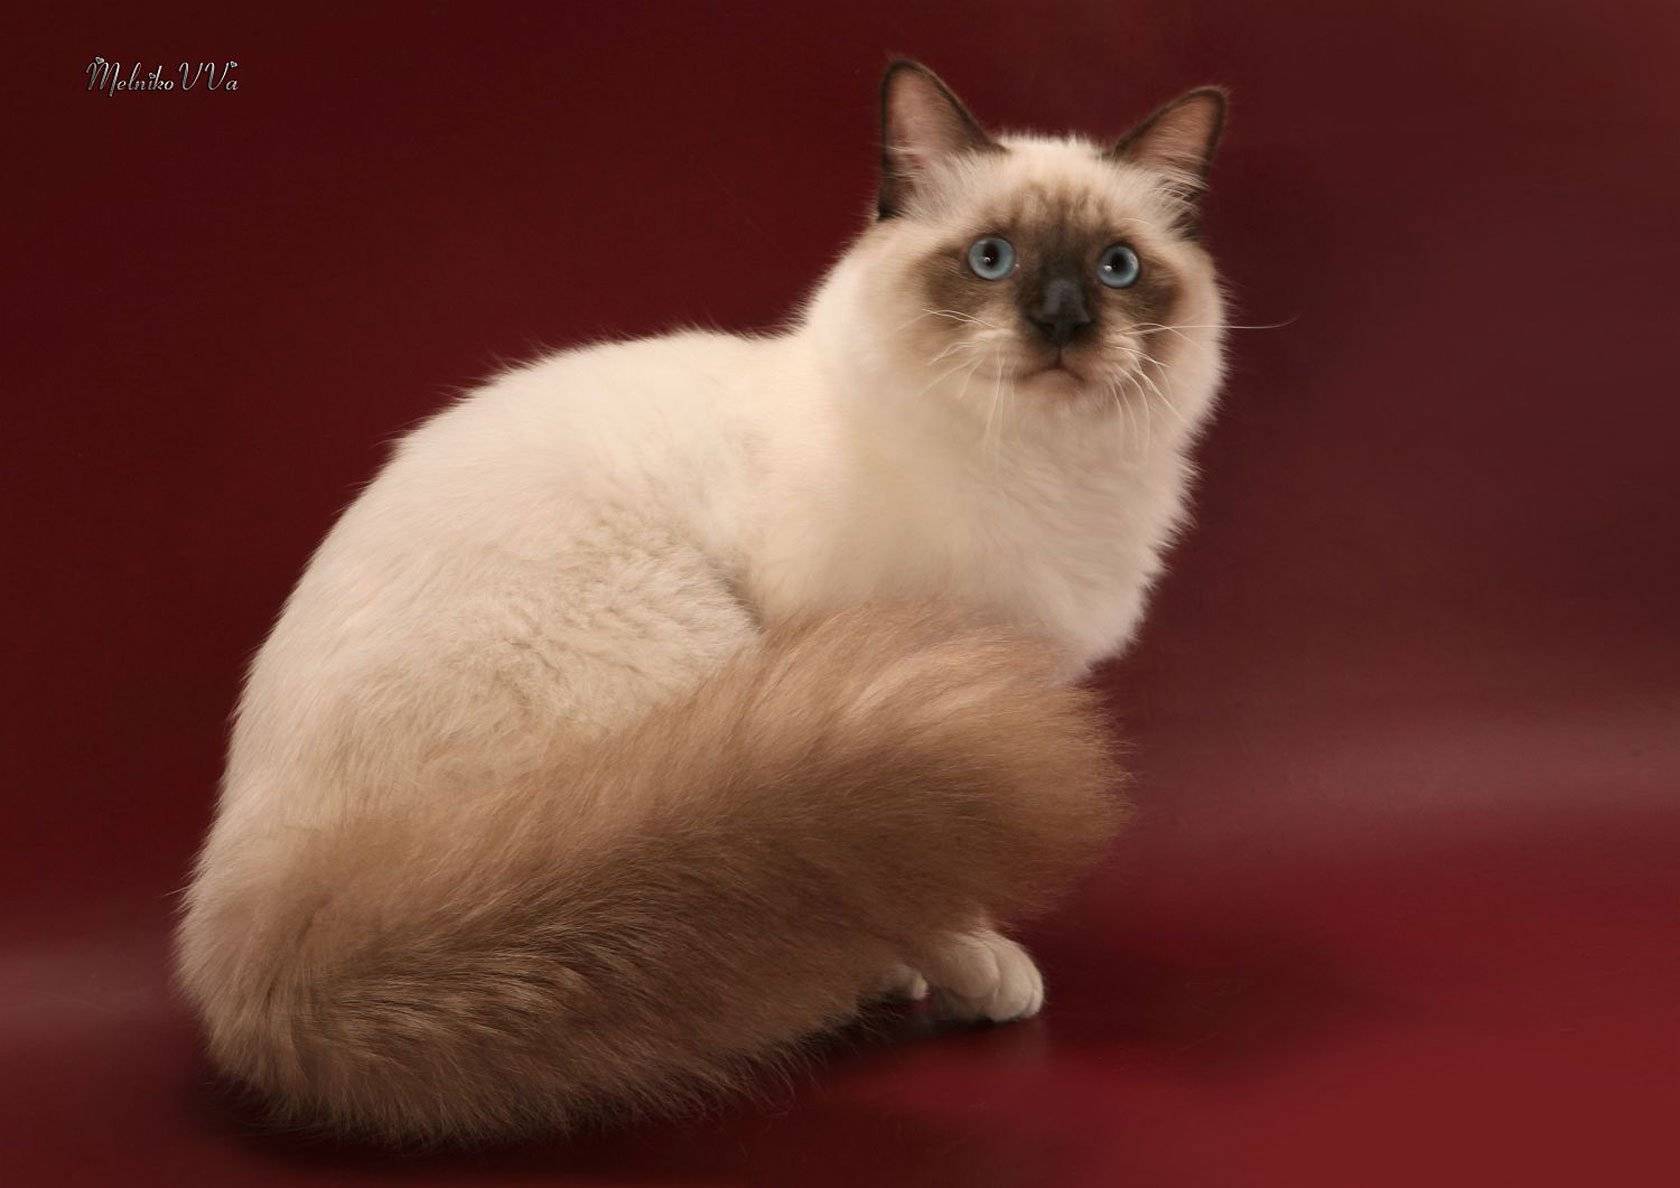 Священная бирманская кошка (священная бирма): 100 фото, цена котят, характер, содержание, особенности породы, отзывы